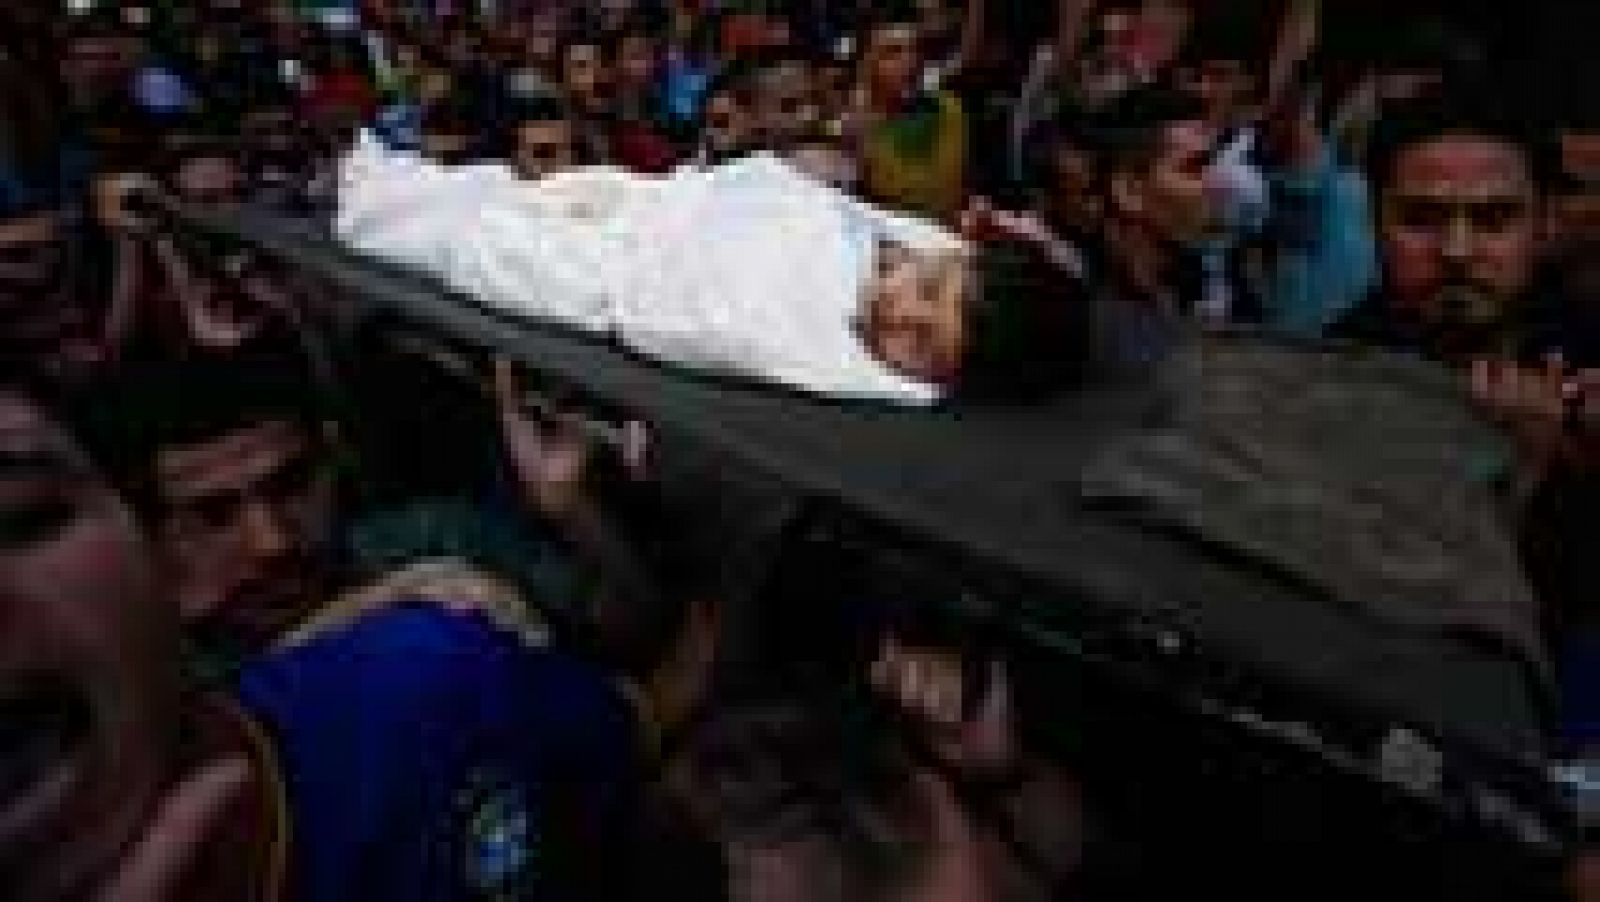  La fiesta de fin de Ramadán, una de las más alegres e importantes del calendario musulmán, se ha convertido en un lunes mortal en Gaza, en el que quince personas murieron, ocho de ellas niños.